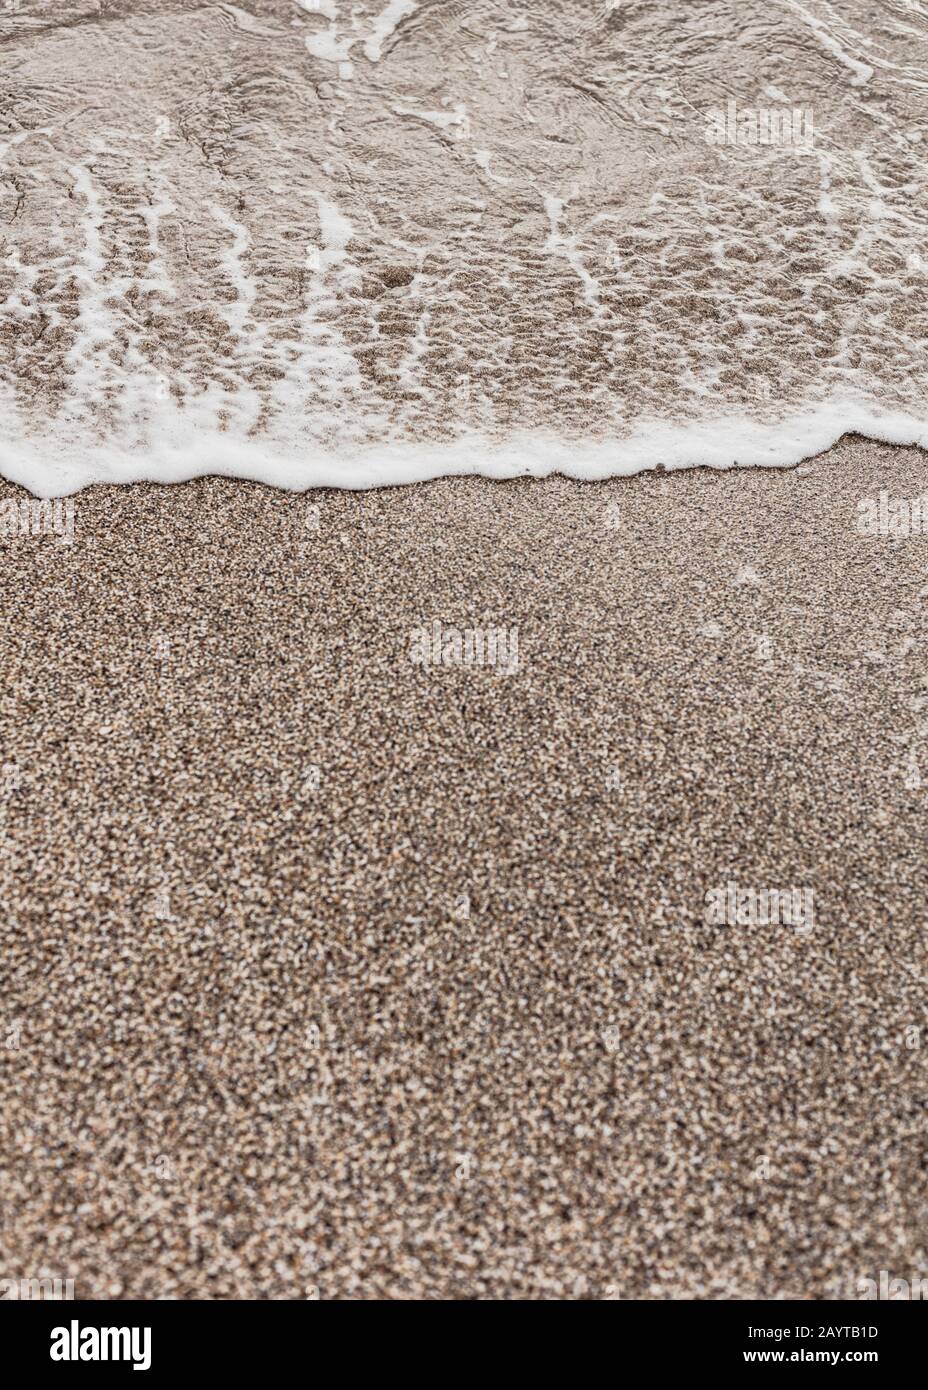 Verschiedene Struktur am Strand - Wasser und Sand, Steine und Kiesel, Wellen und Spritzer. Selektiver Fokus. Stockfoto